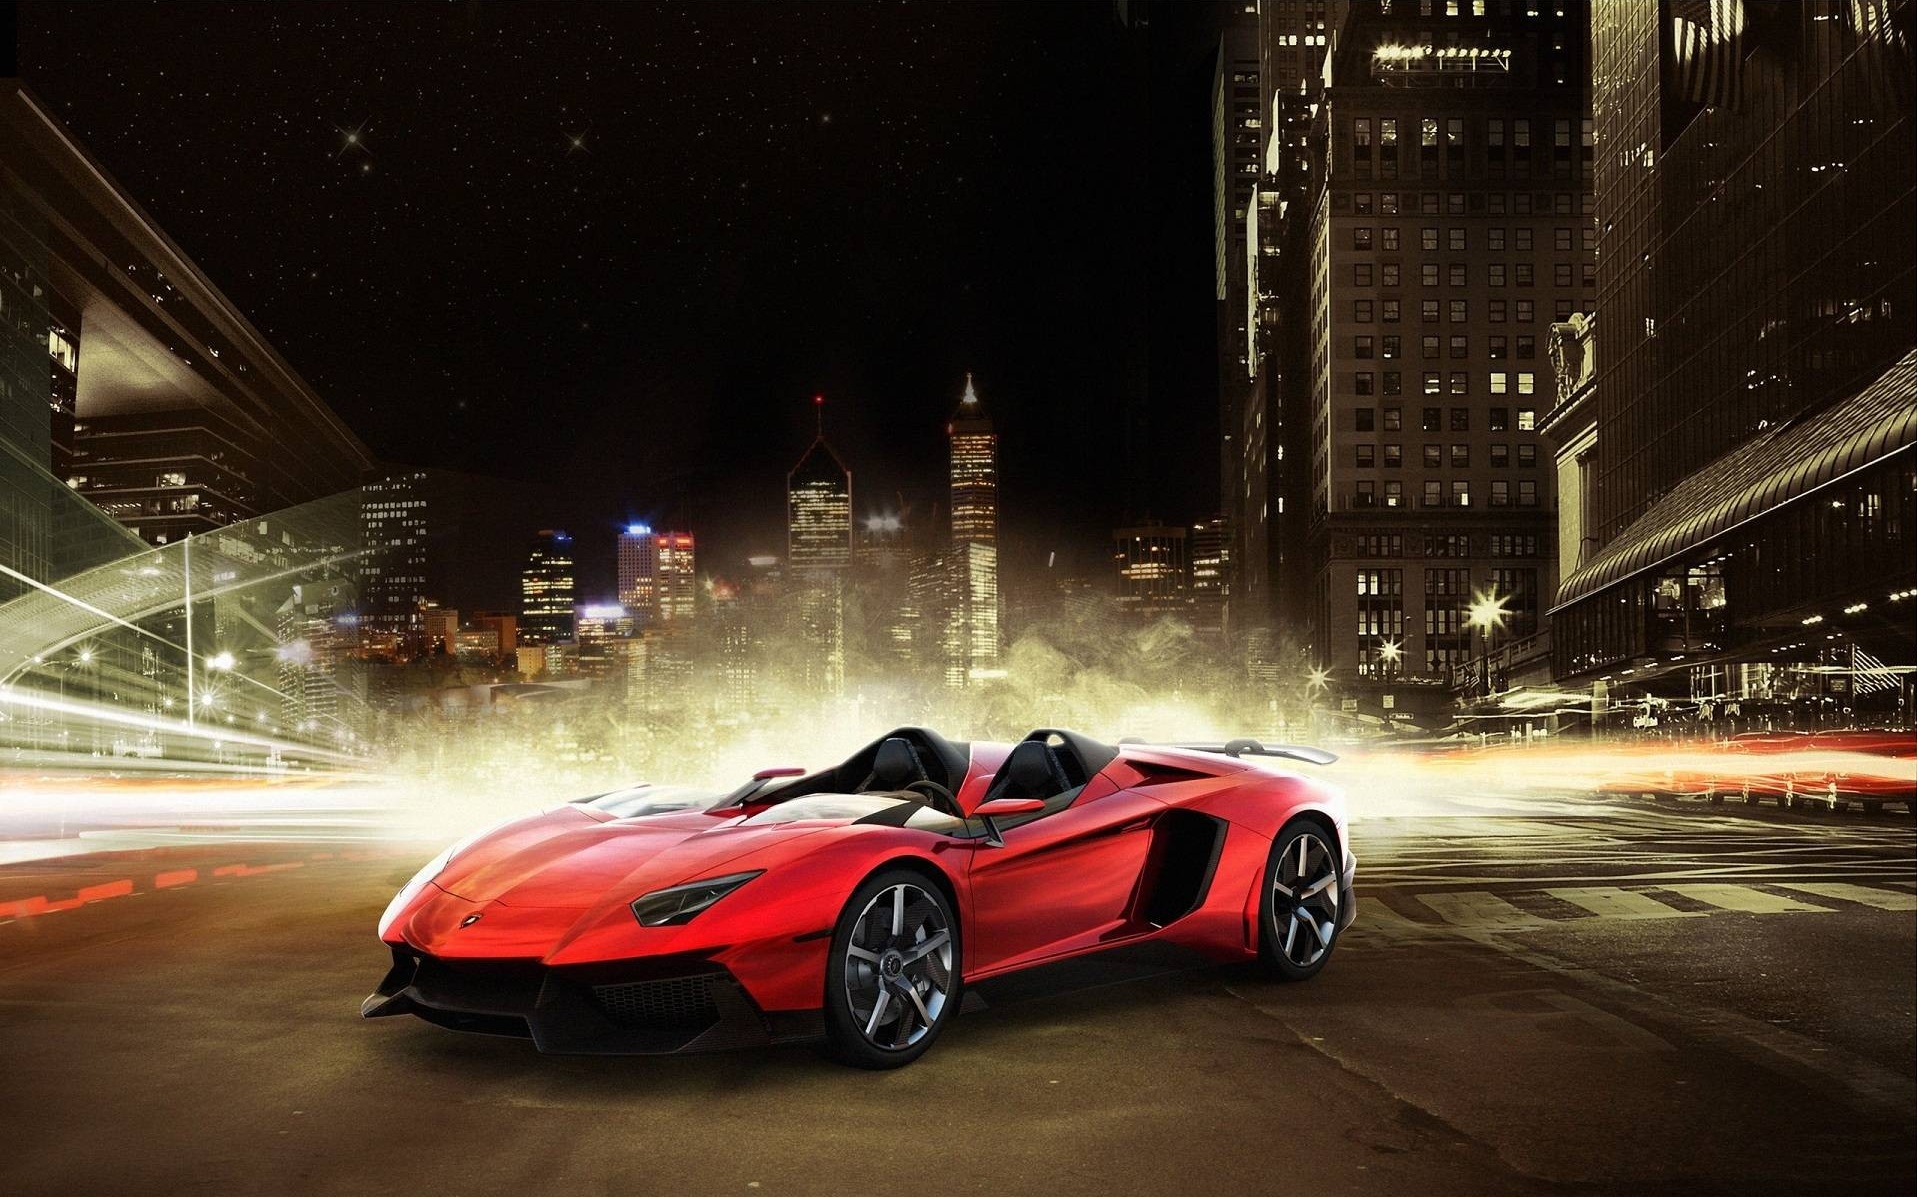 Descarga gratuita de fondo de pantalla para móvil de Noche, Ciudad, Coche, Convertible, Lamborghini Aventador, Vehículos.